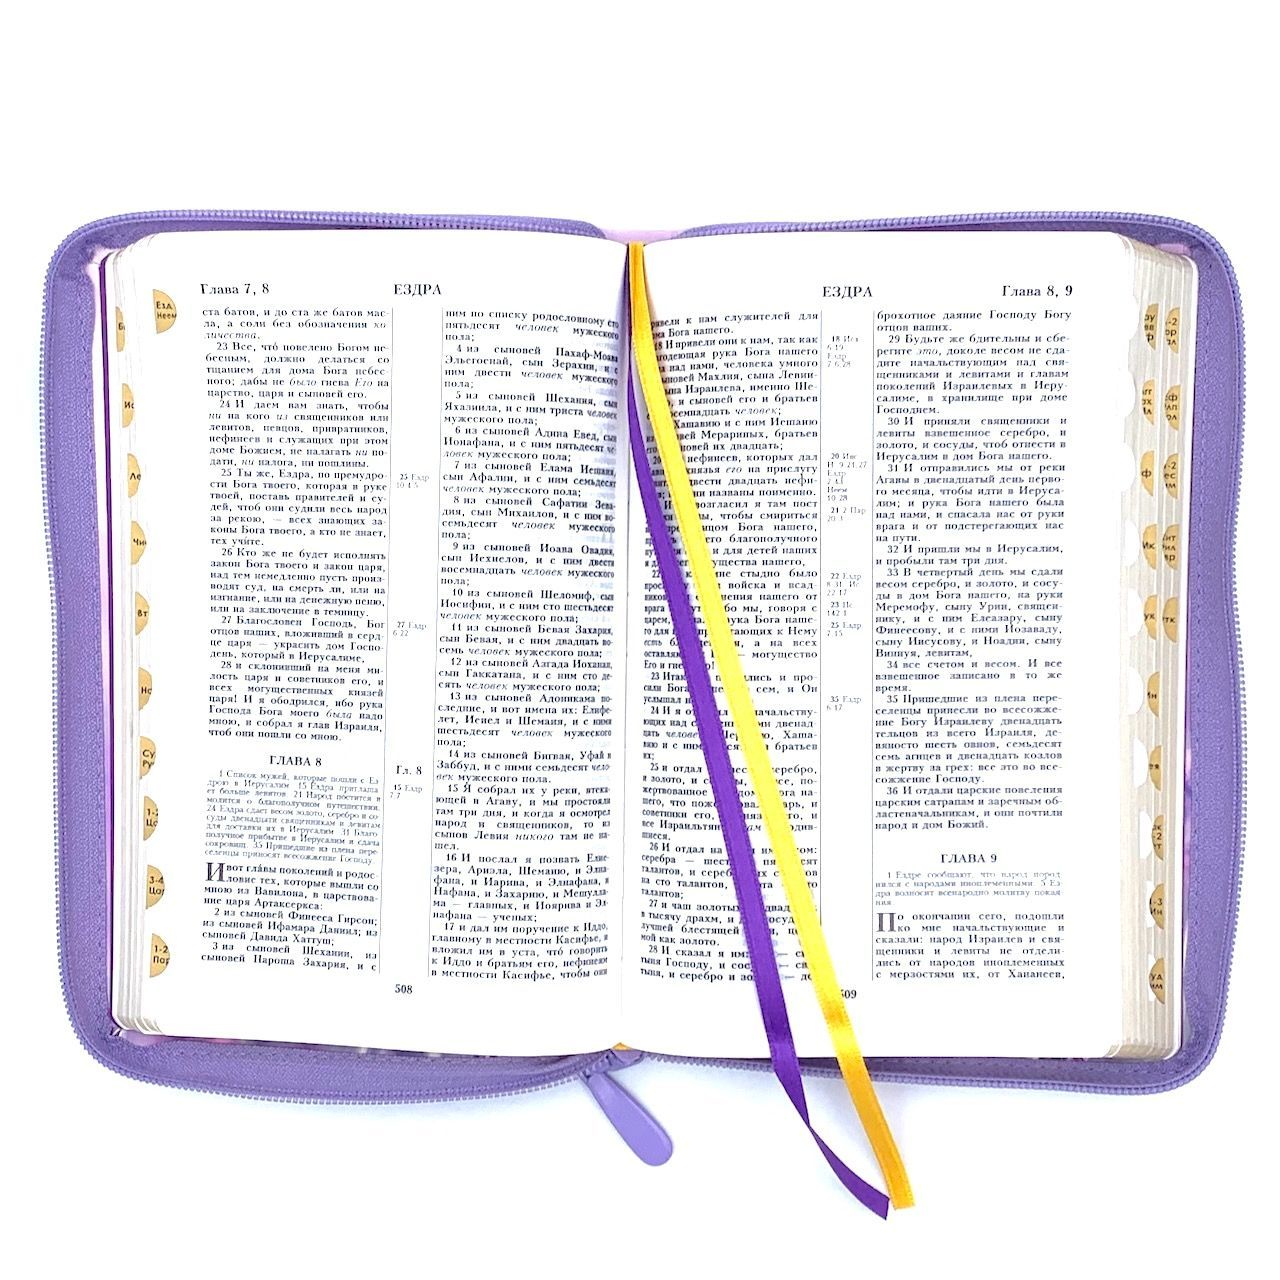 Библия 055zti код 23055-3 цветная печать "Лаванда", переплет из искусственной кожи на молнии с индексами, формат 143*220 мм